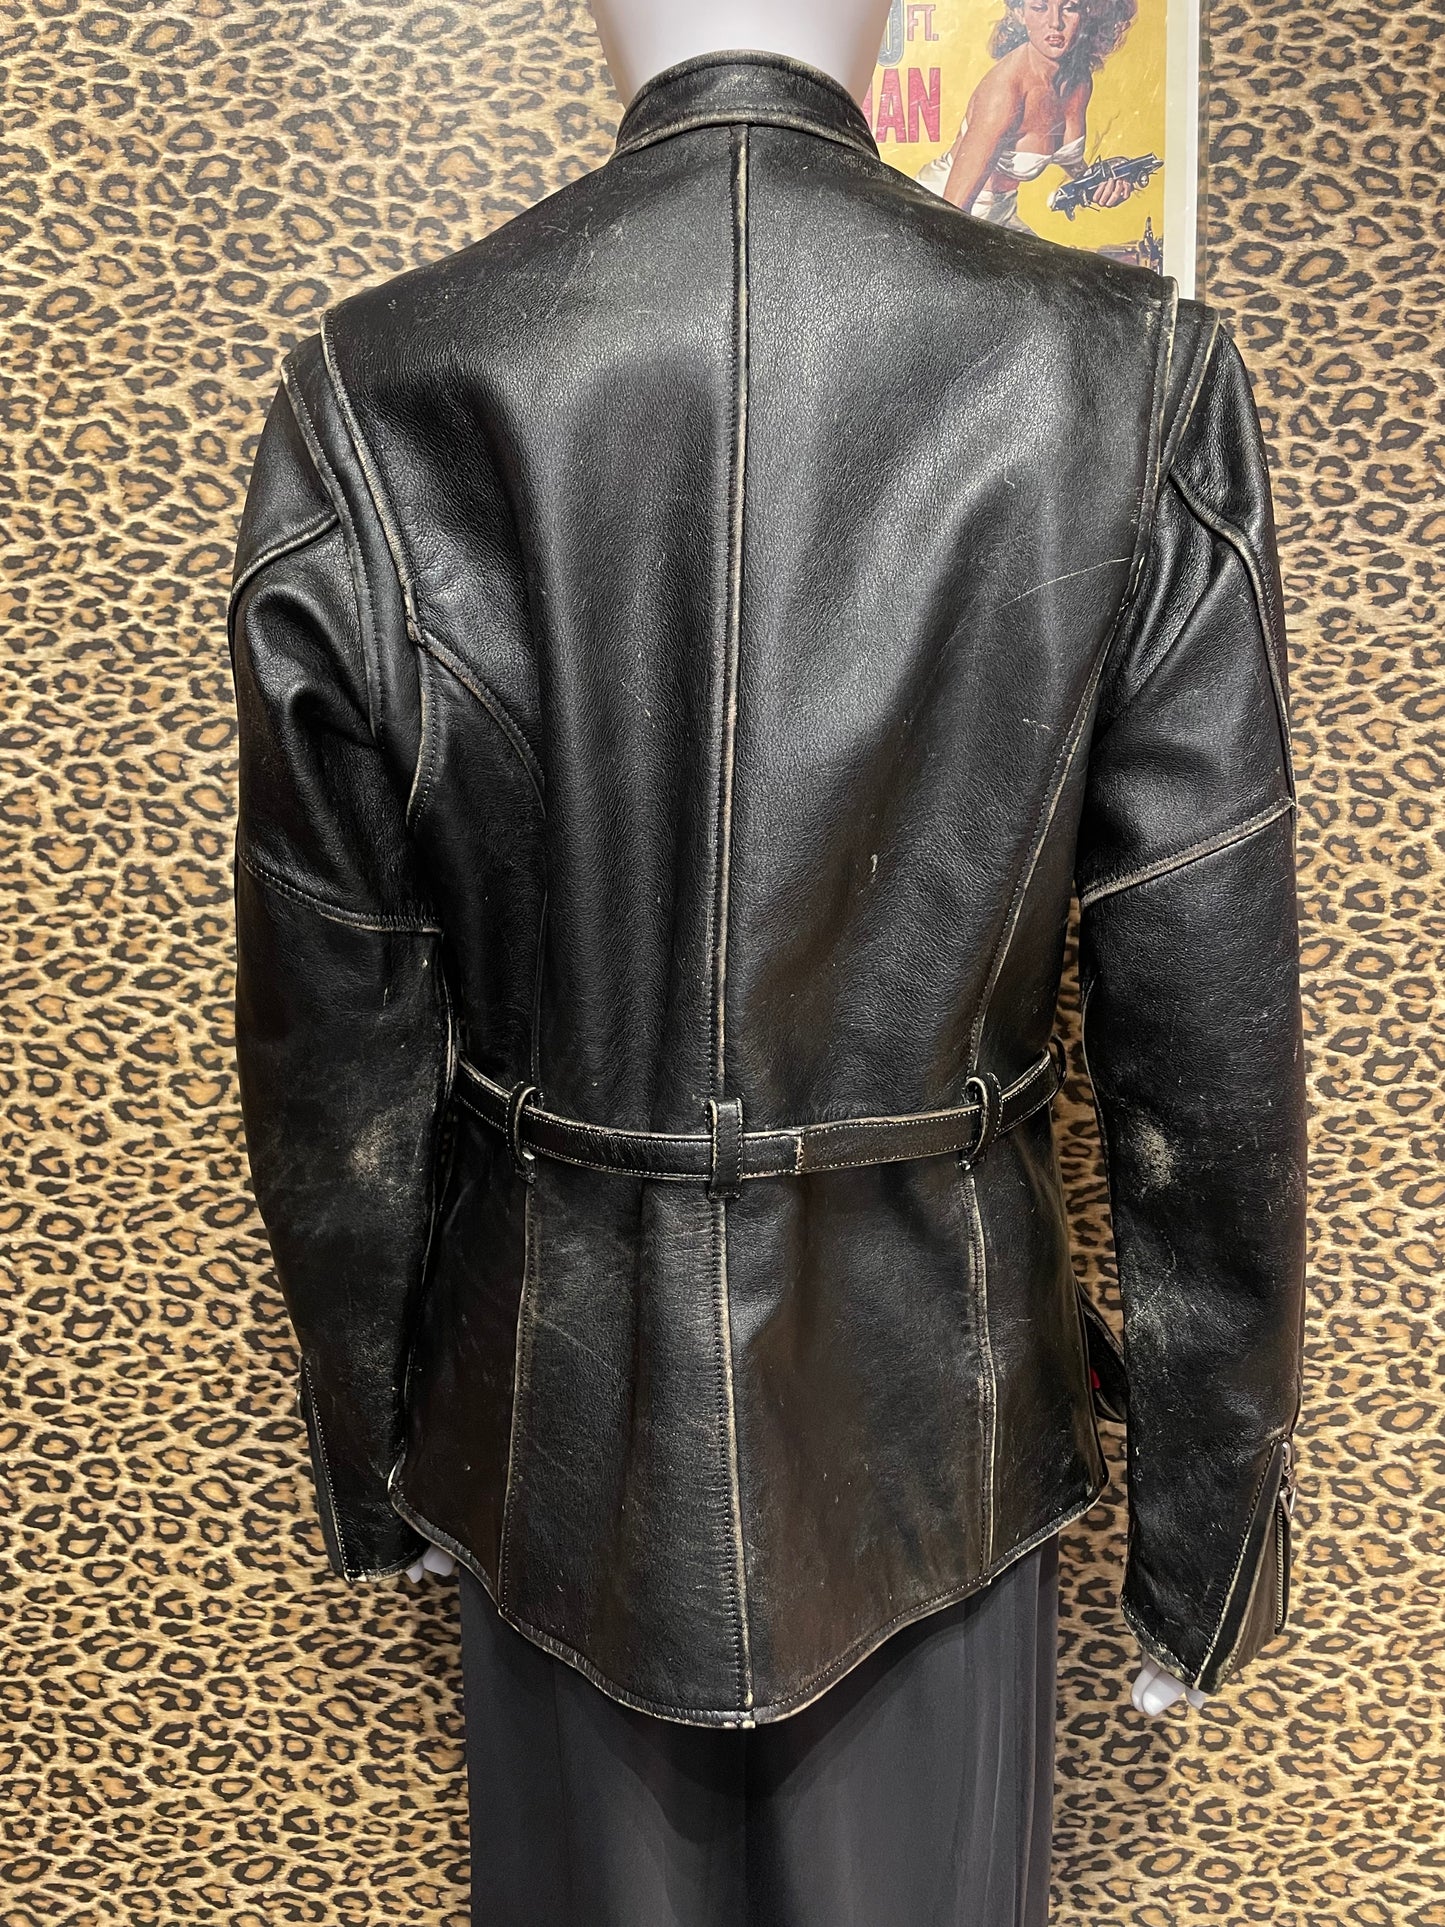 Harley Davidson Belted Leather Jacket